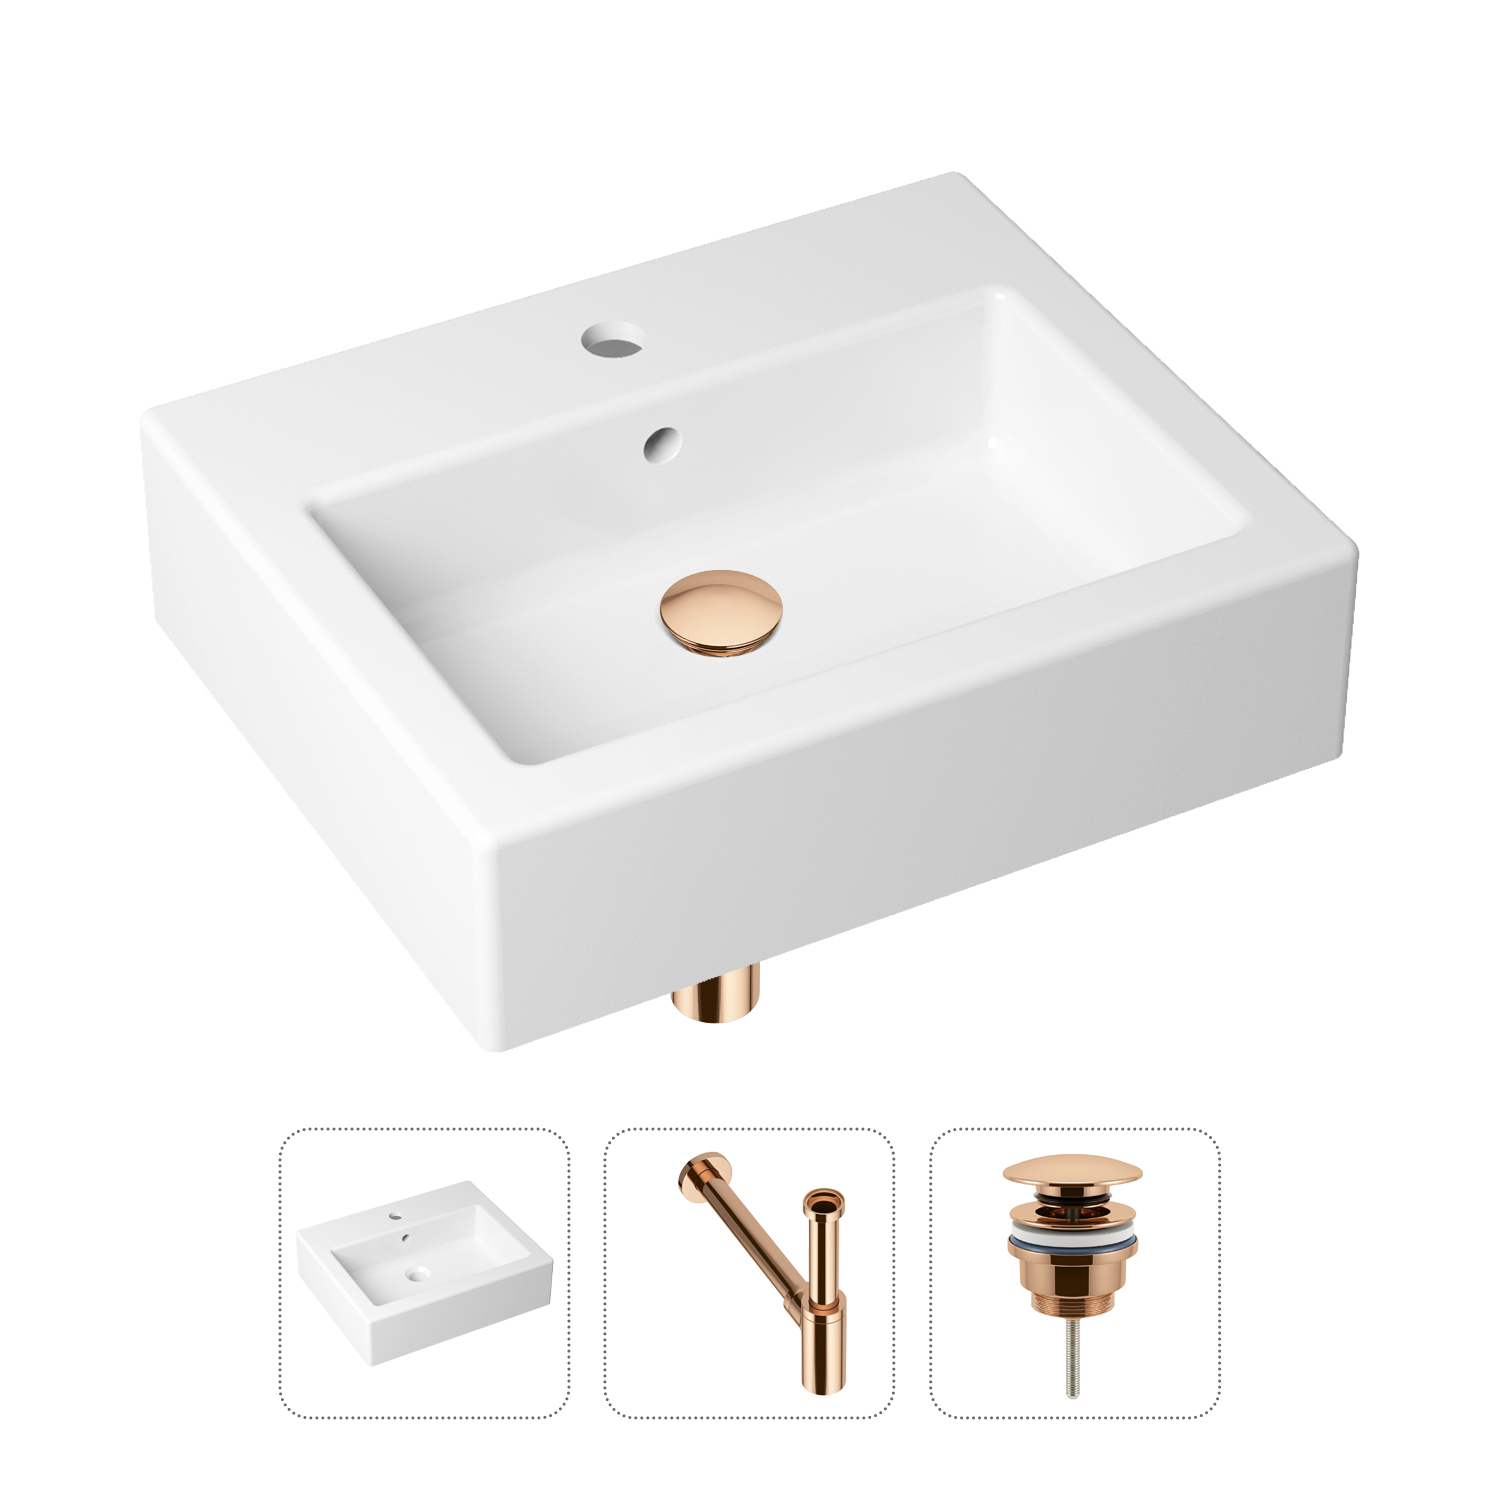 Комплект 3 в 1 Lavinia Boho Bathroom Sink 21520661: раковина 50.5 см, сифон, донный клапан комплект 3 в 1 lavinia boho bathroom sink 21520661 раковина 50 5 см сифон донный клапан